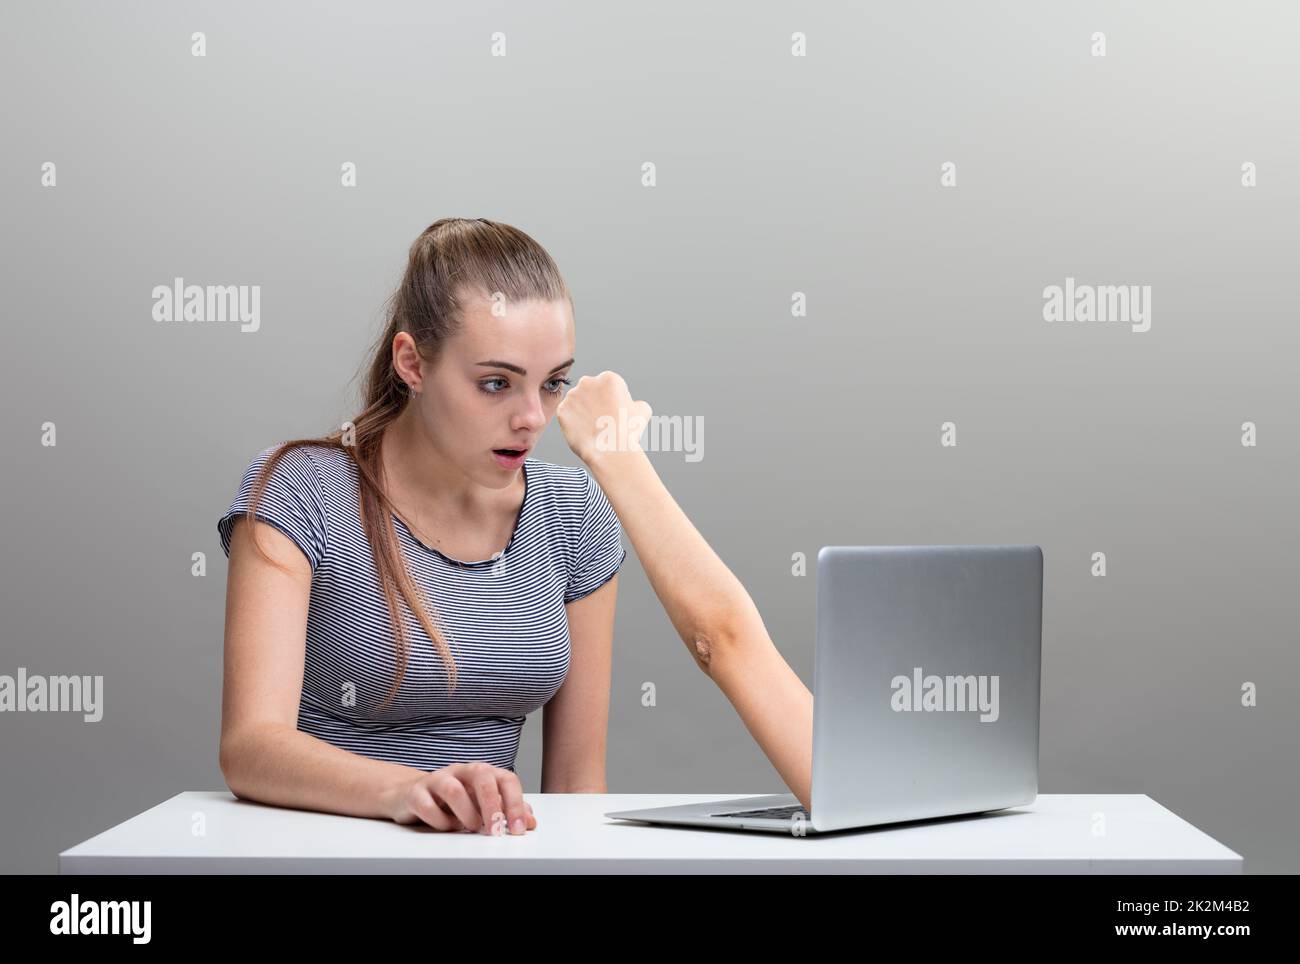 Frau, die Angst hatte, weil ein Arm aus dem Laptop ausstrebte Stockfoto